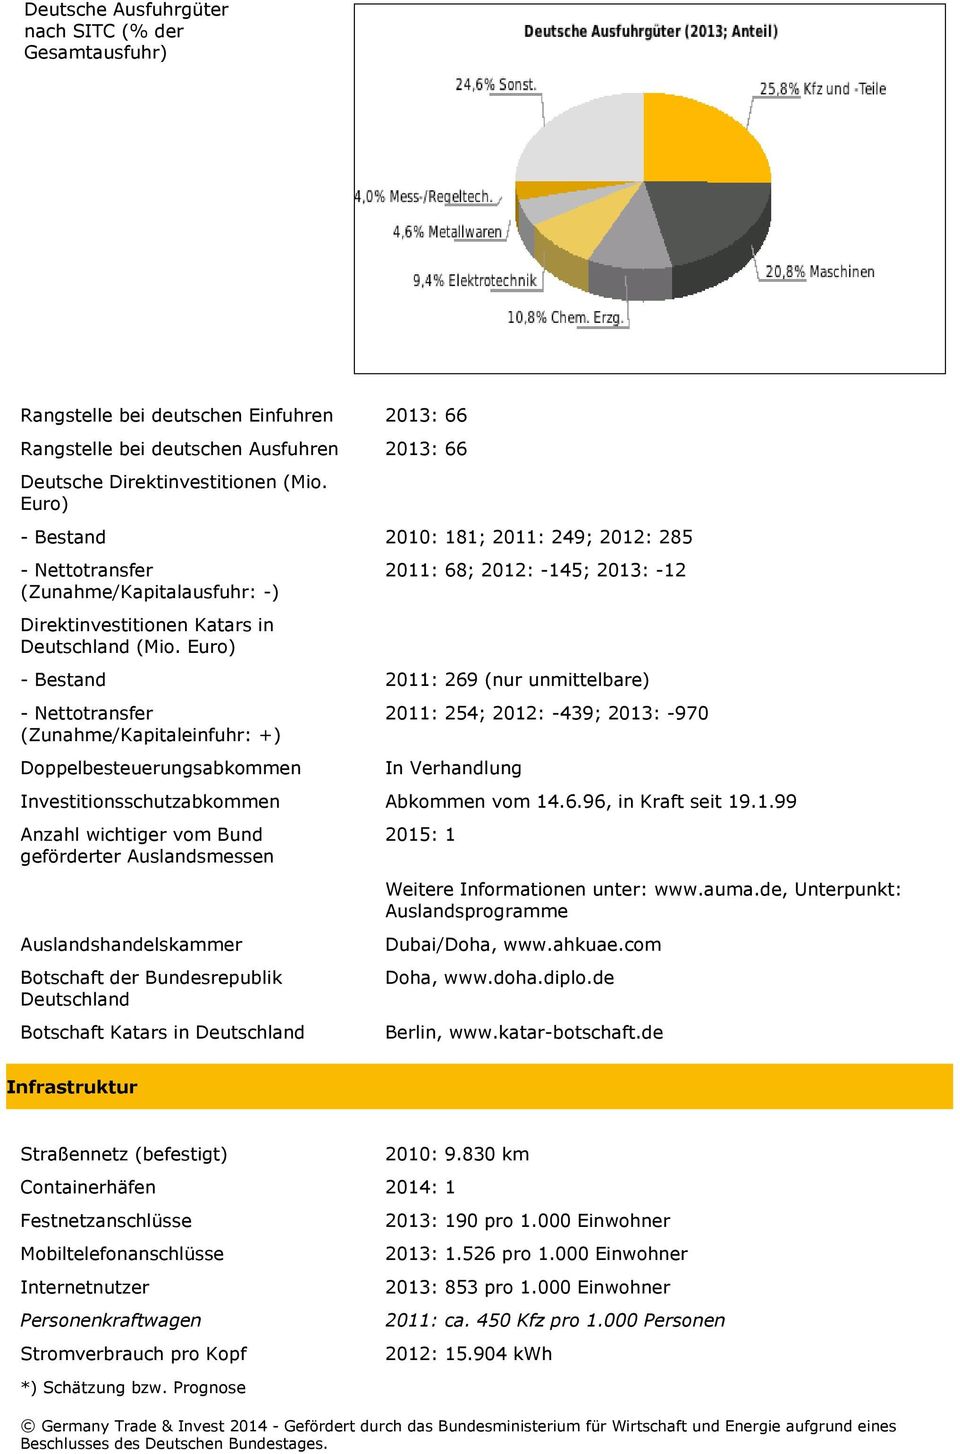 Euro) - Bestand 2011: 269 (nur unmittelbare) - Nettotransfer (Zunahme/Kapitaleinfuhr: +) 2011: 254; 2012: -439; 2013: -970 Doppelbesteuerungsabkommen In Verhandlung Investitionsschutzabkommen